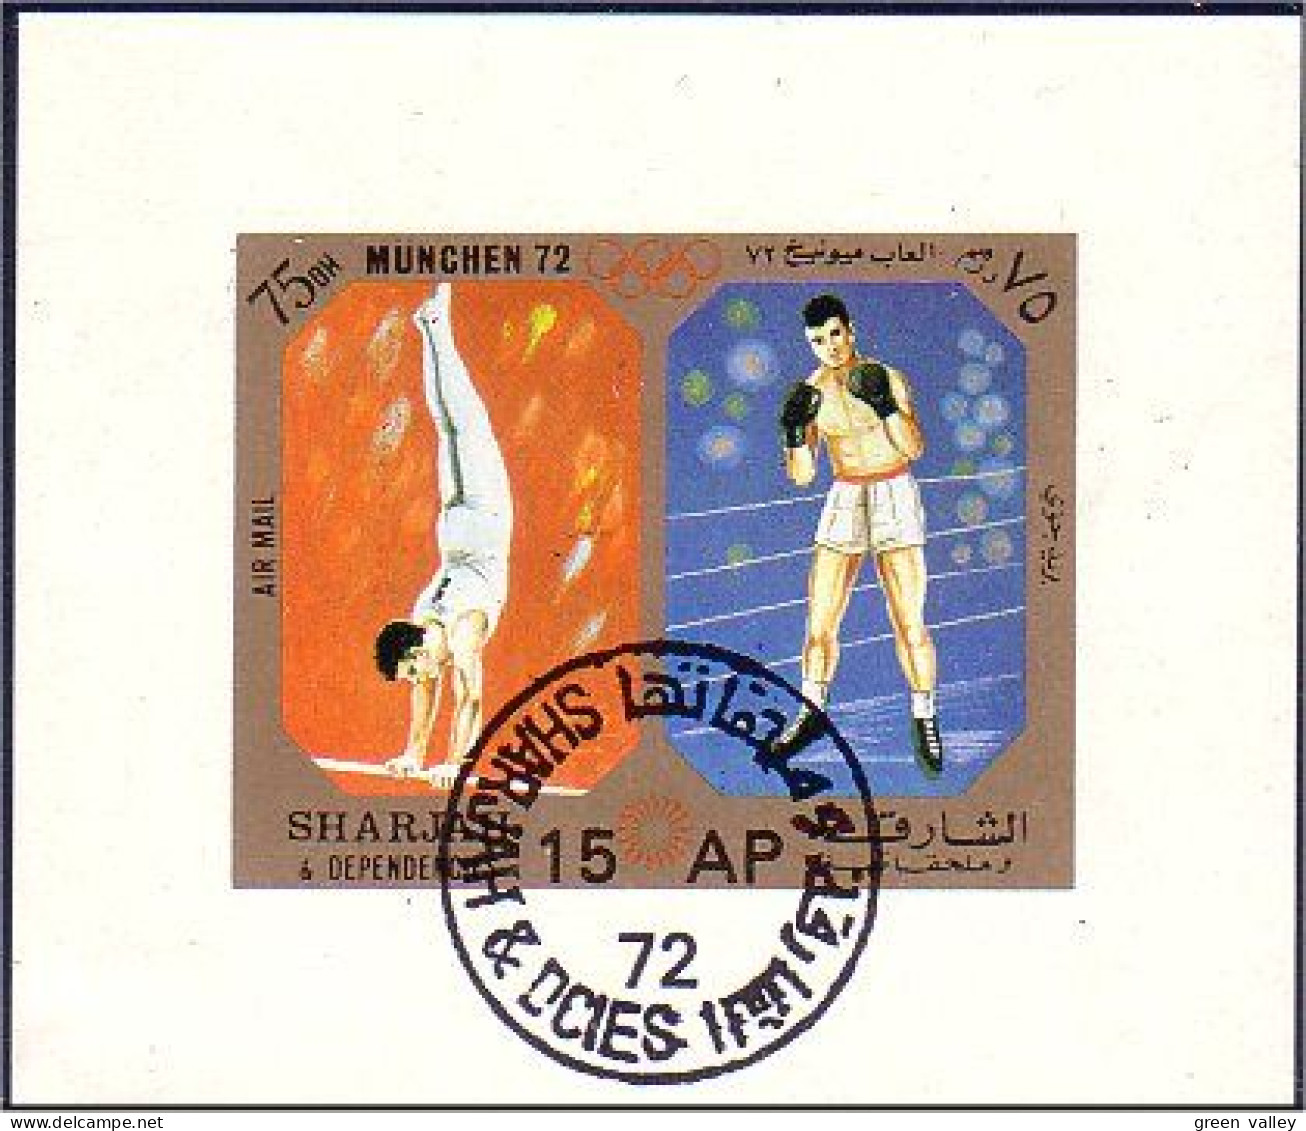 804 Sharjah Boxe Et Gymnastique Bloc Feuillet Souvenir Sheet (SHA-2) - Boksen